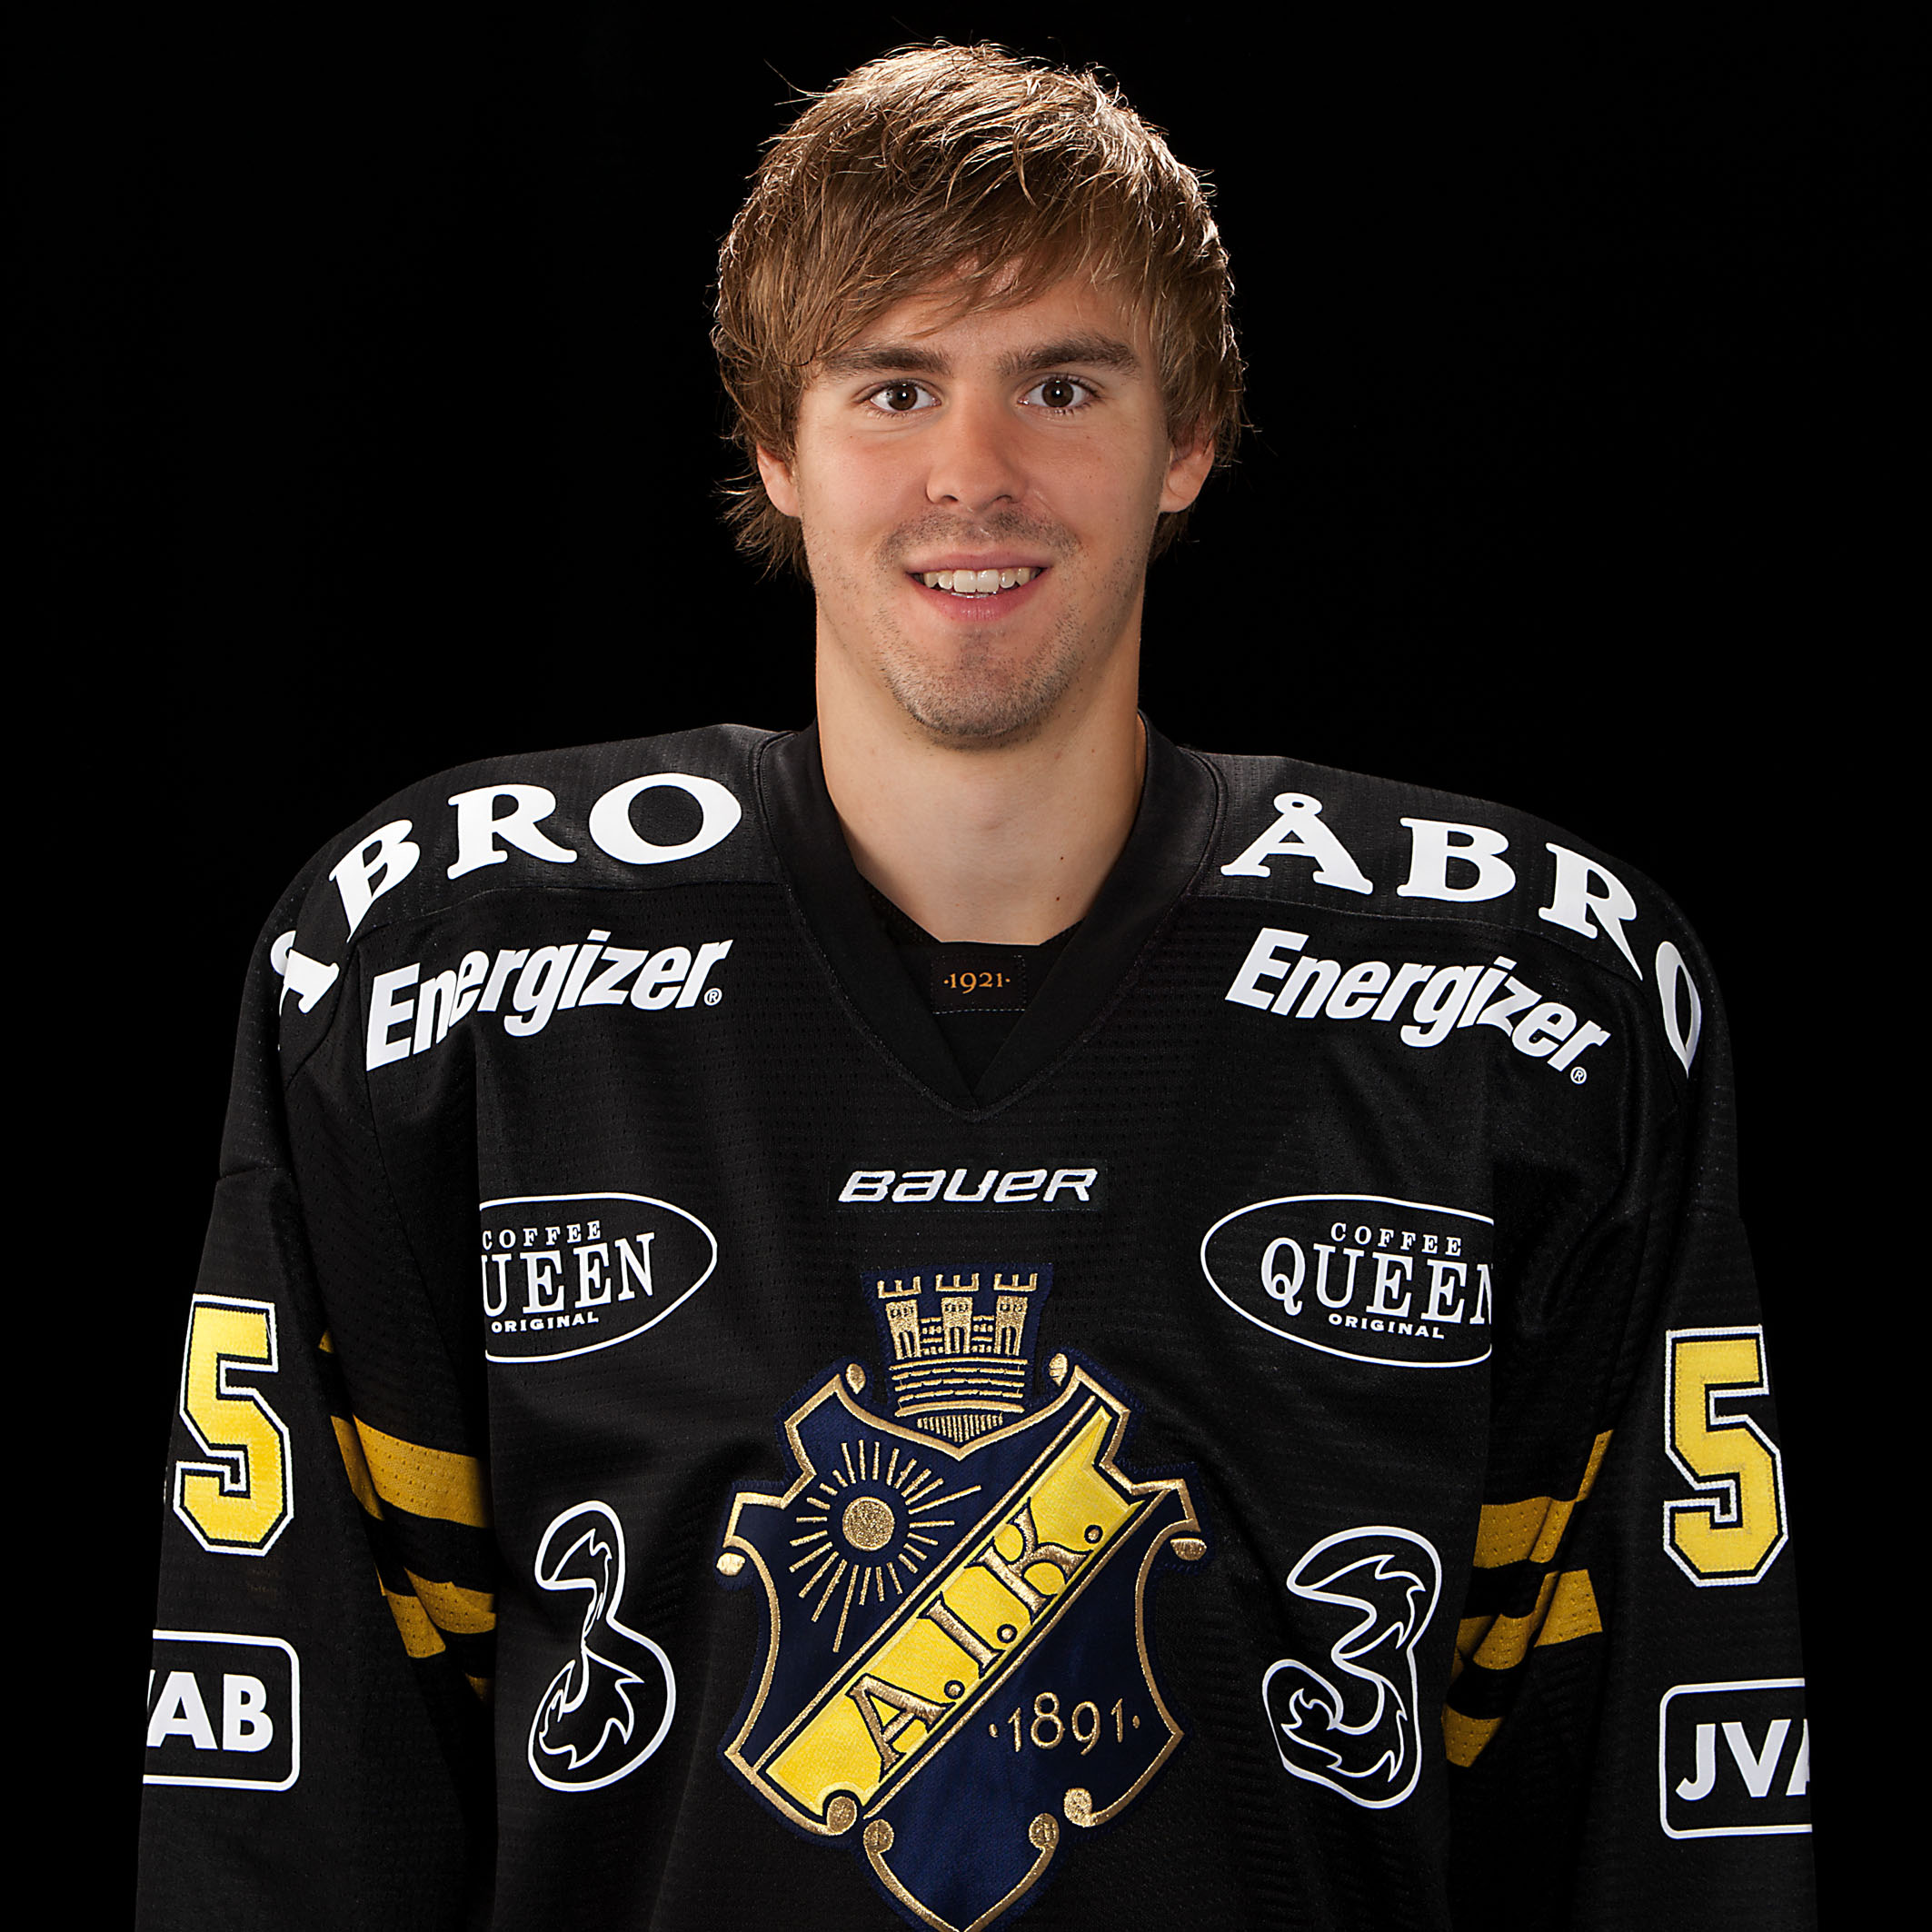 elitserien, Carin Götblad, AIK, KHL